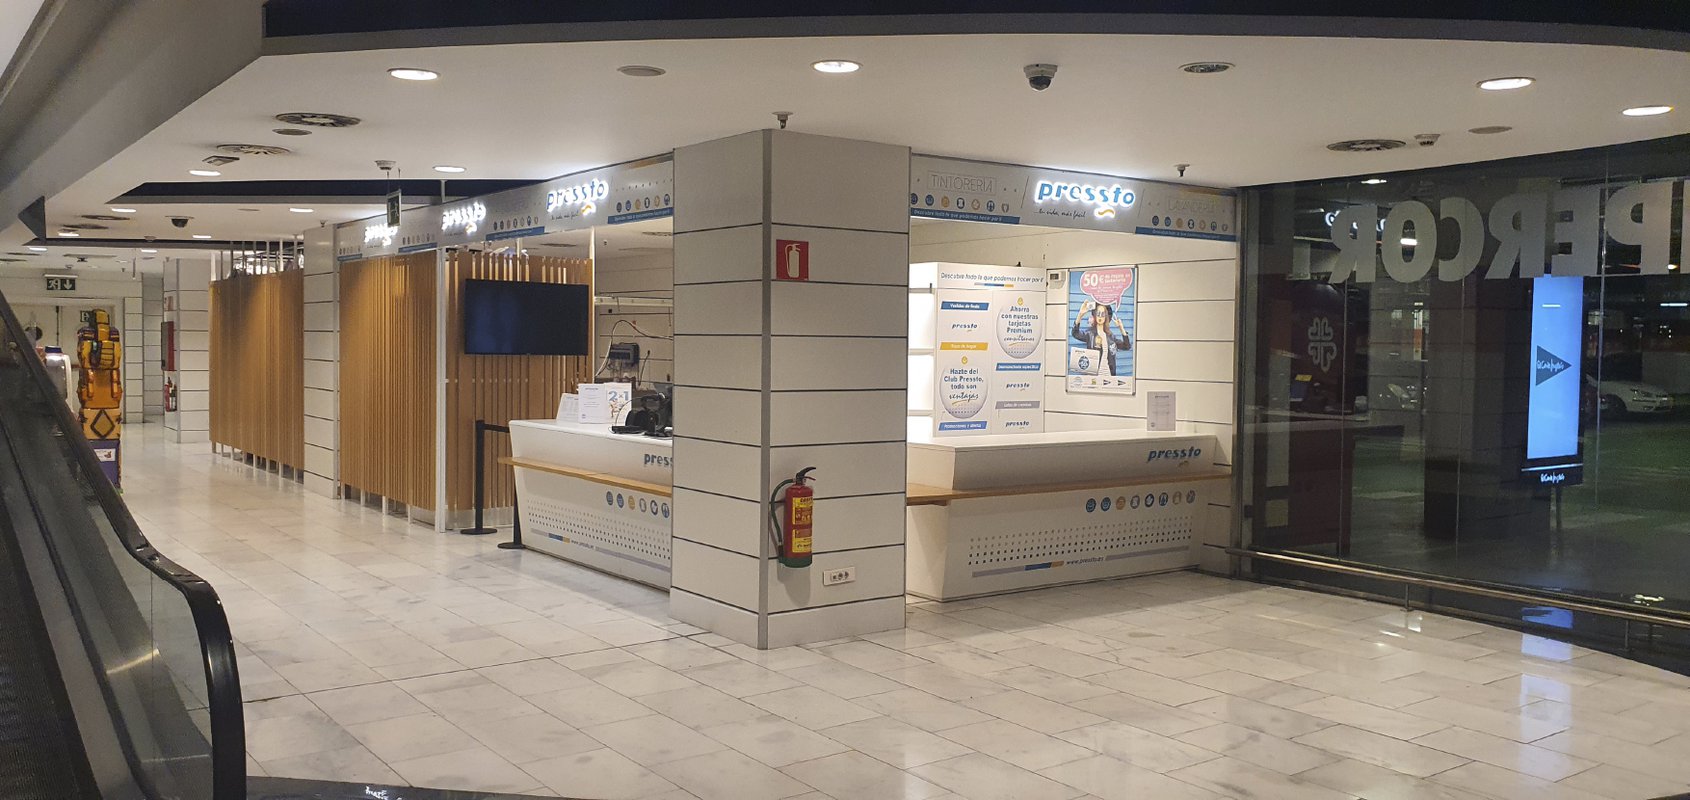 Pressto abre tres nuevas tintorerías en Zaragoza